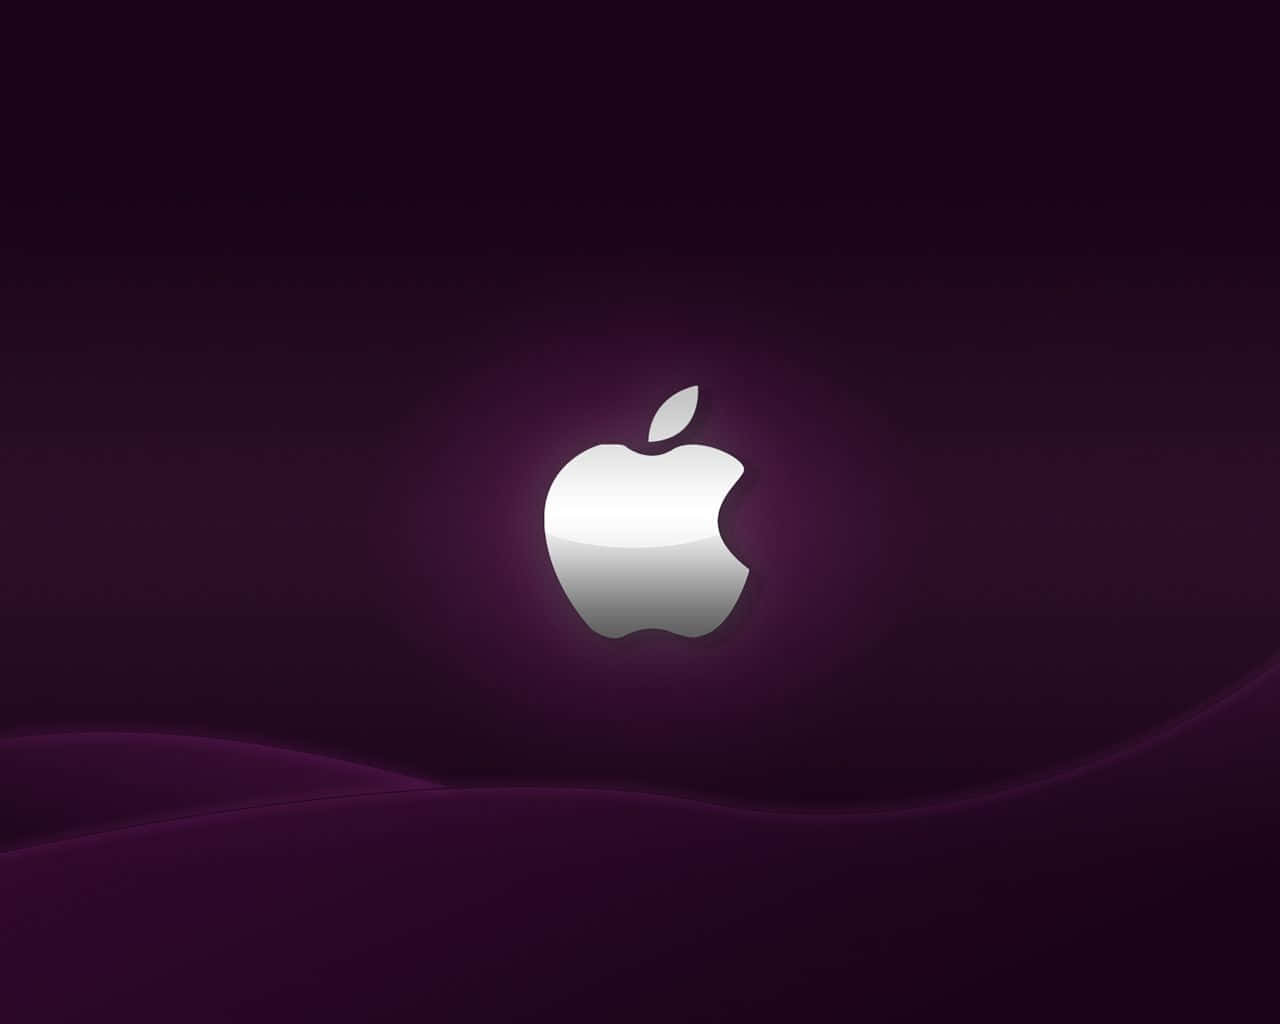 Fundode Tela Da Apple Hd Em Roxo Escuro Com Logo Prateado.